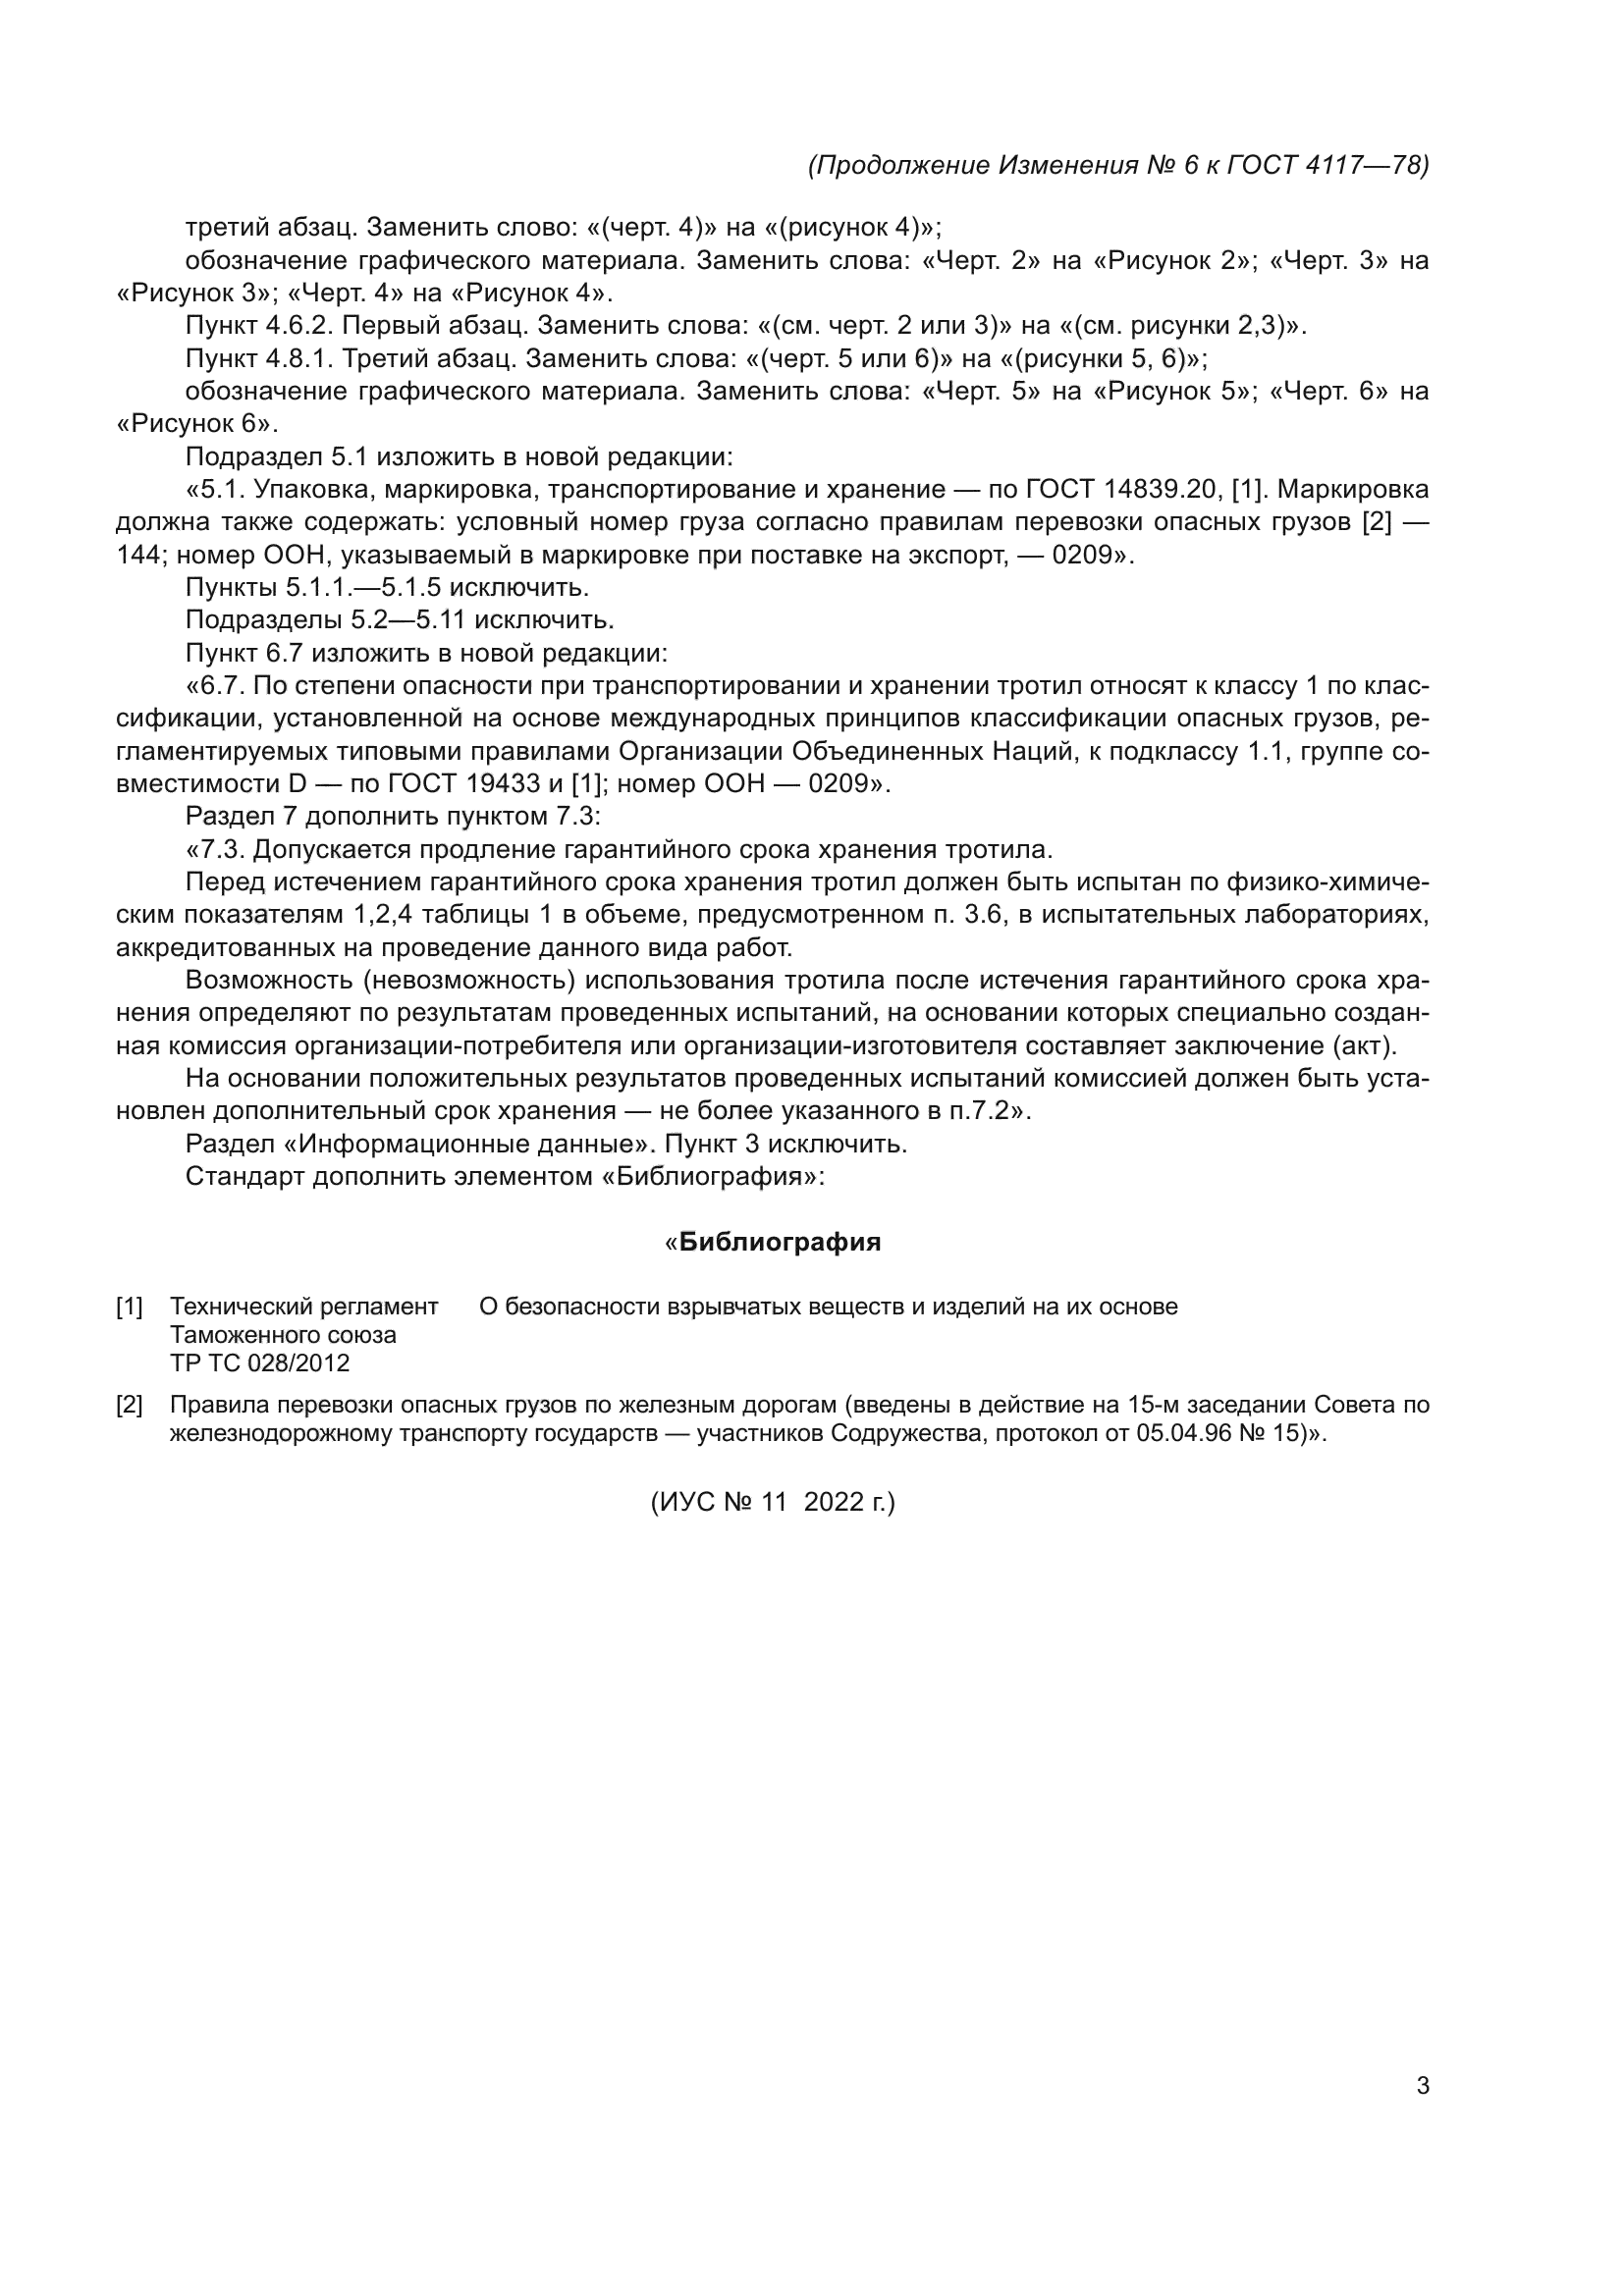 Изменение №6 к ГОСТ 4117-78